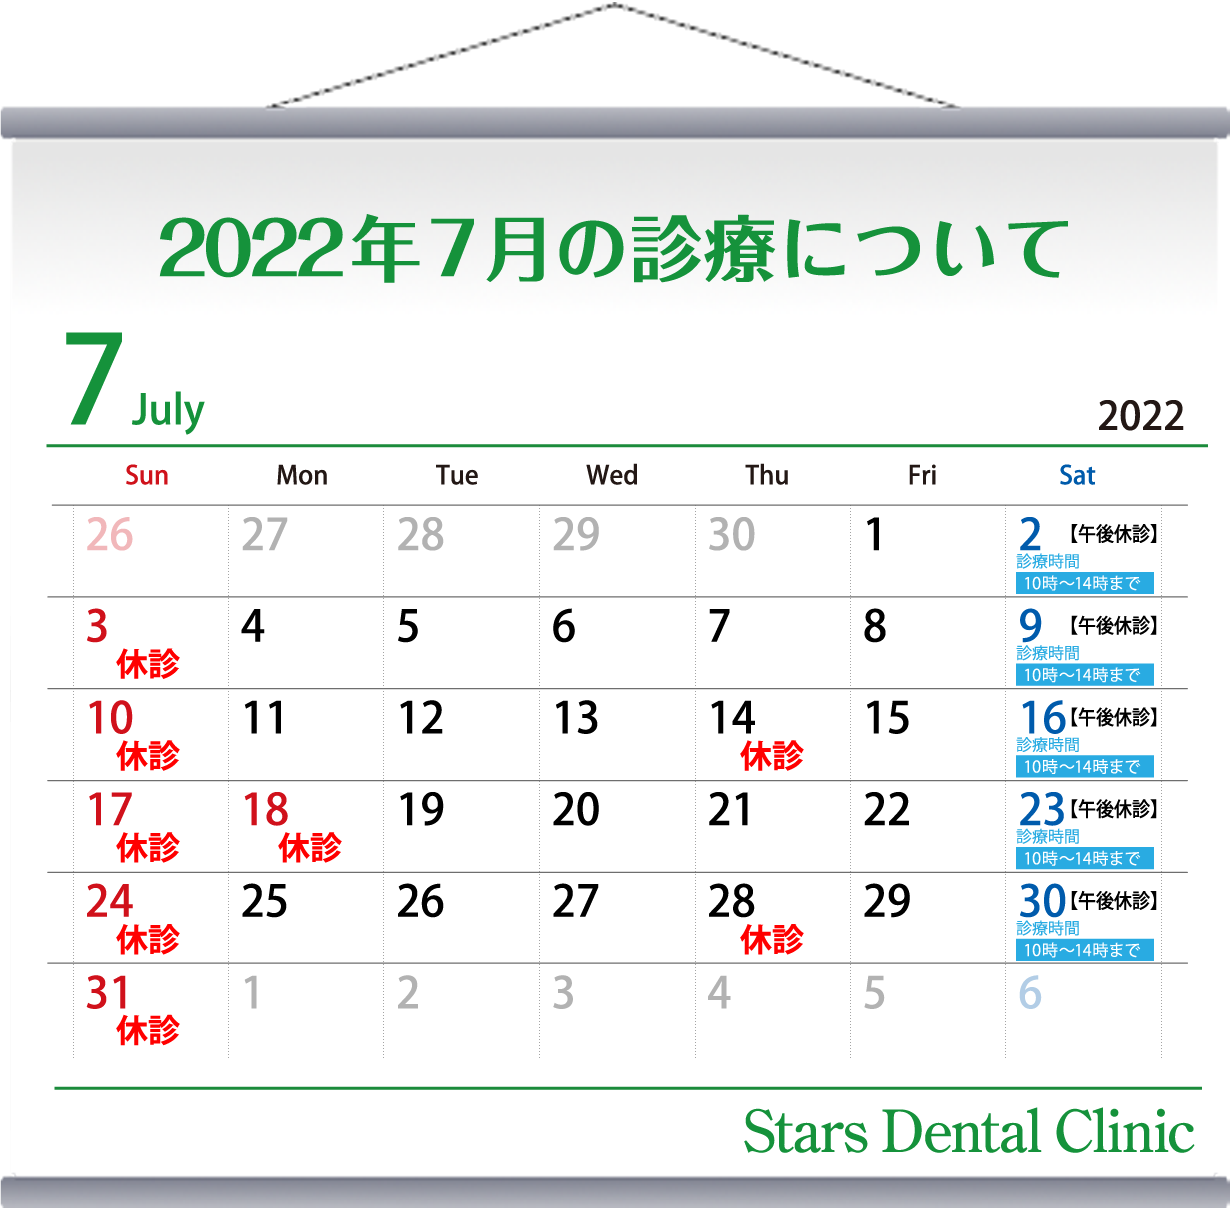 2022年8月の診療について